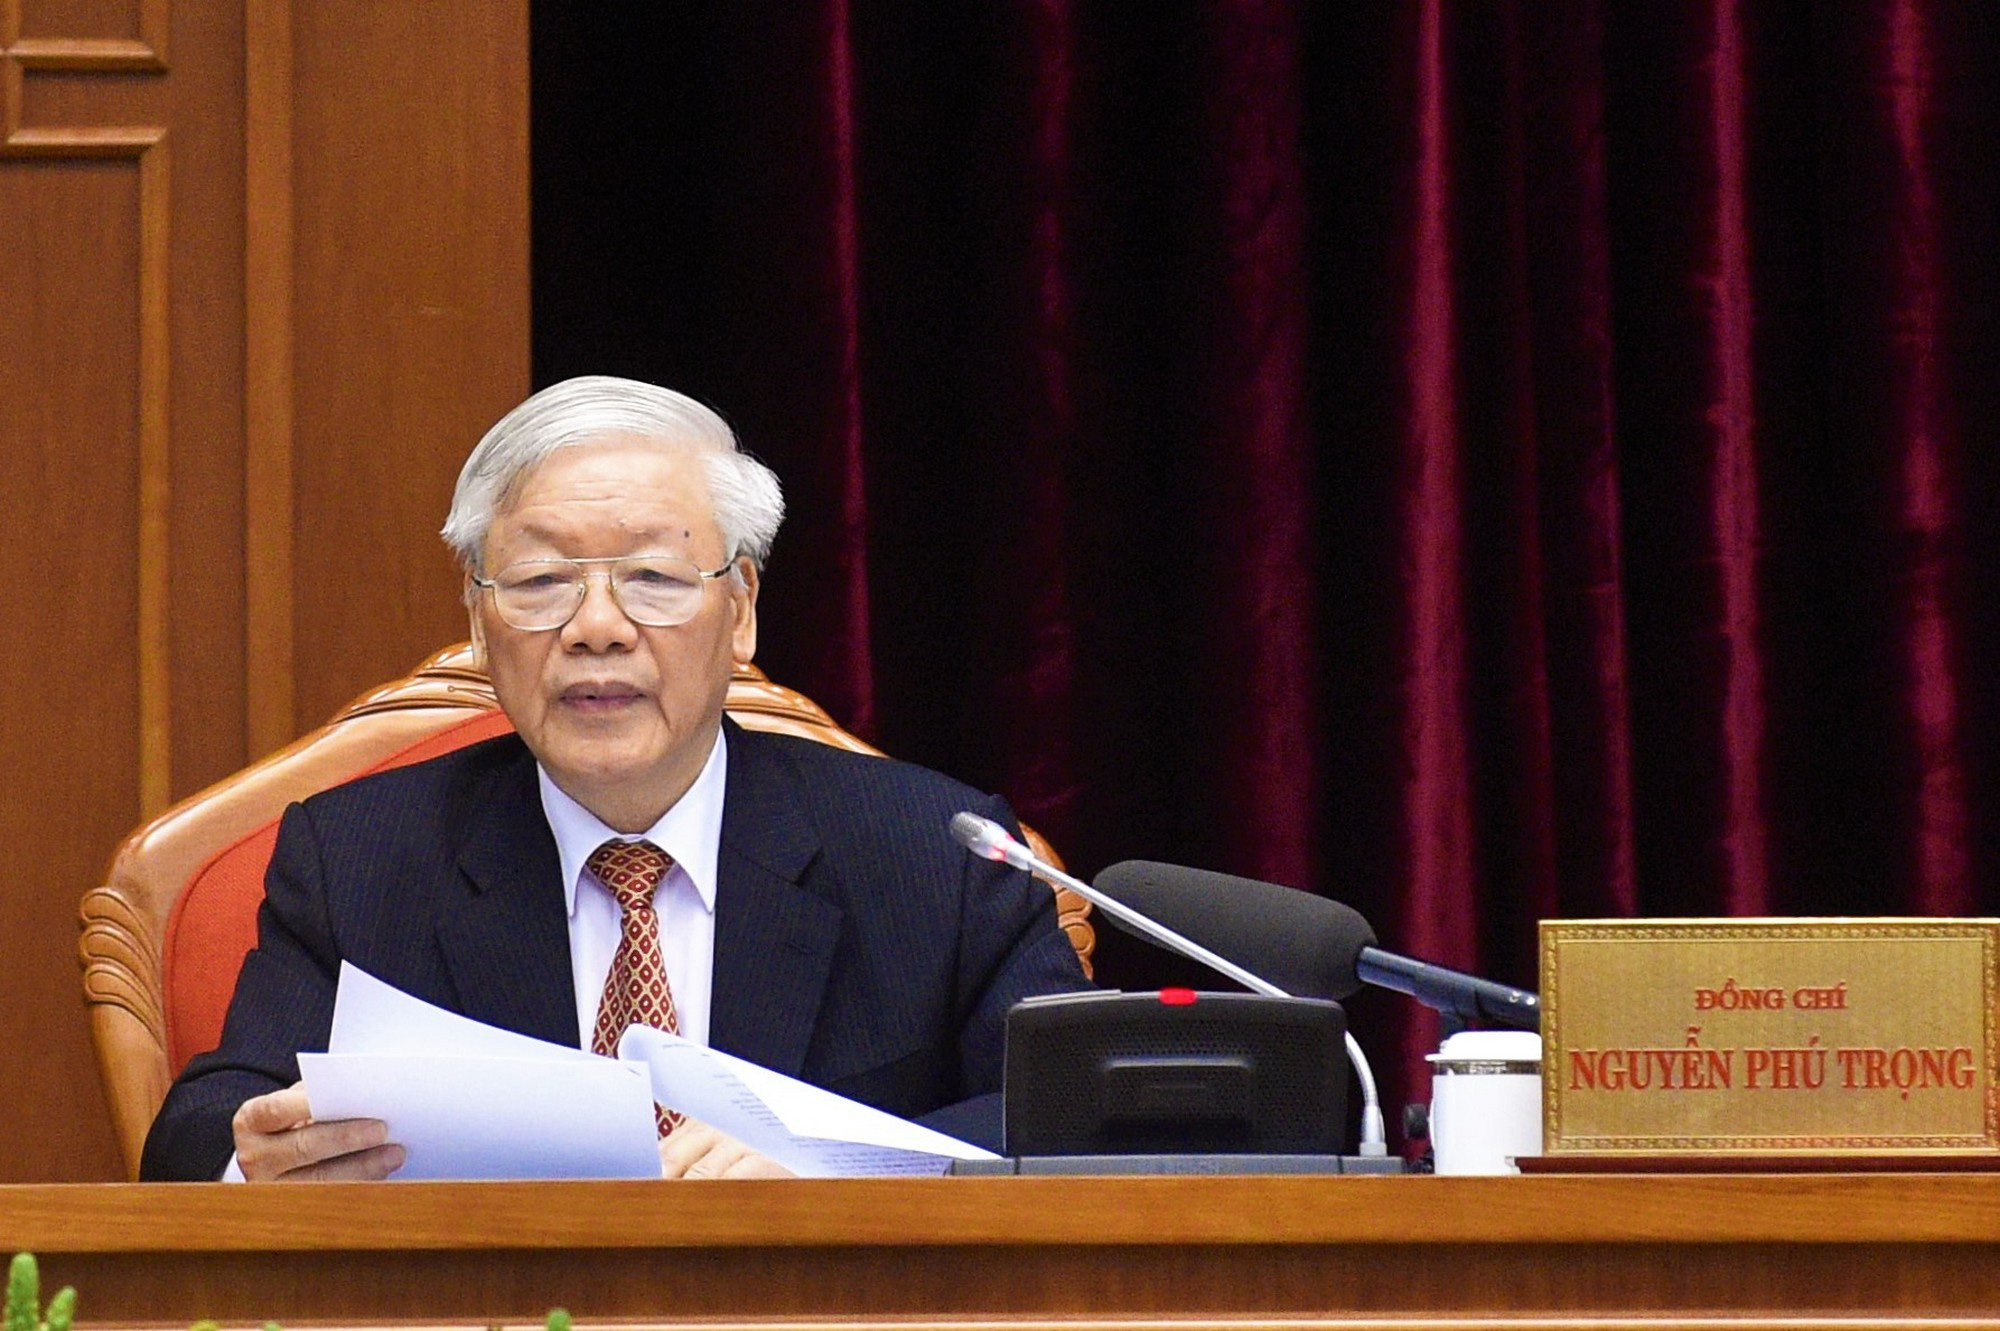 Toàn văn phát biểu khai mạc Hội nghị Trung ương 12, khóa XII của Tổng Bí thư, Chủ tịch nước Nguyễn Phú Trọng - Ảnh 1.